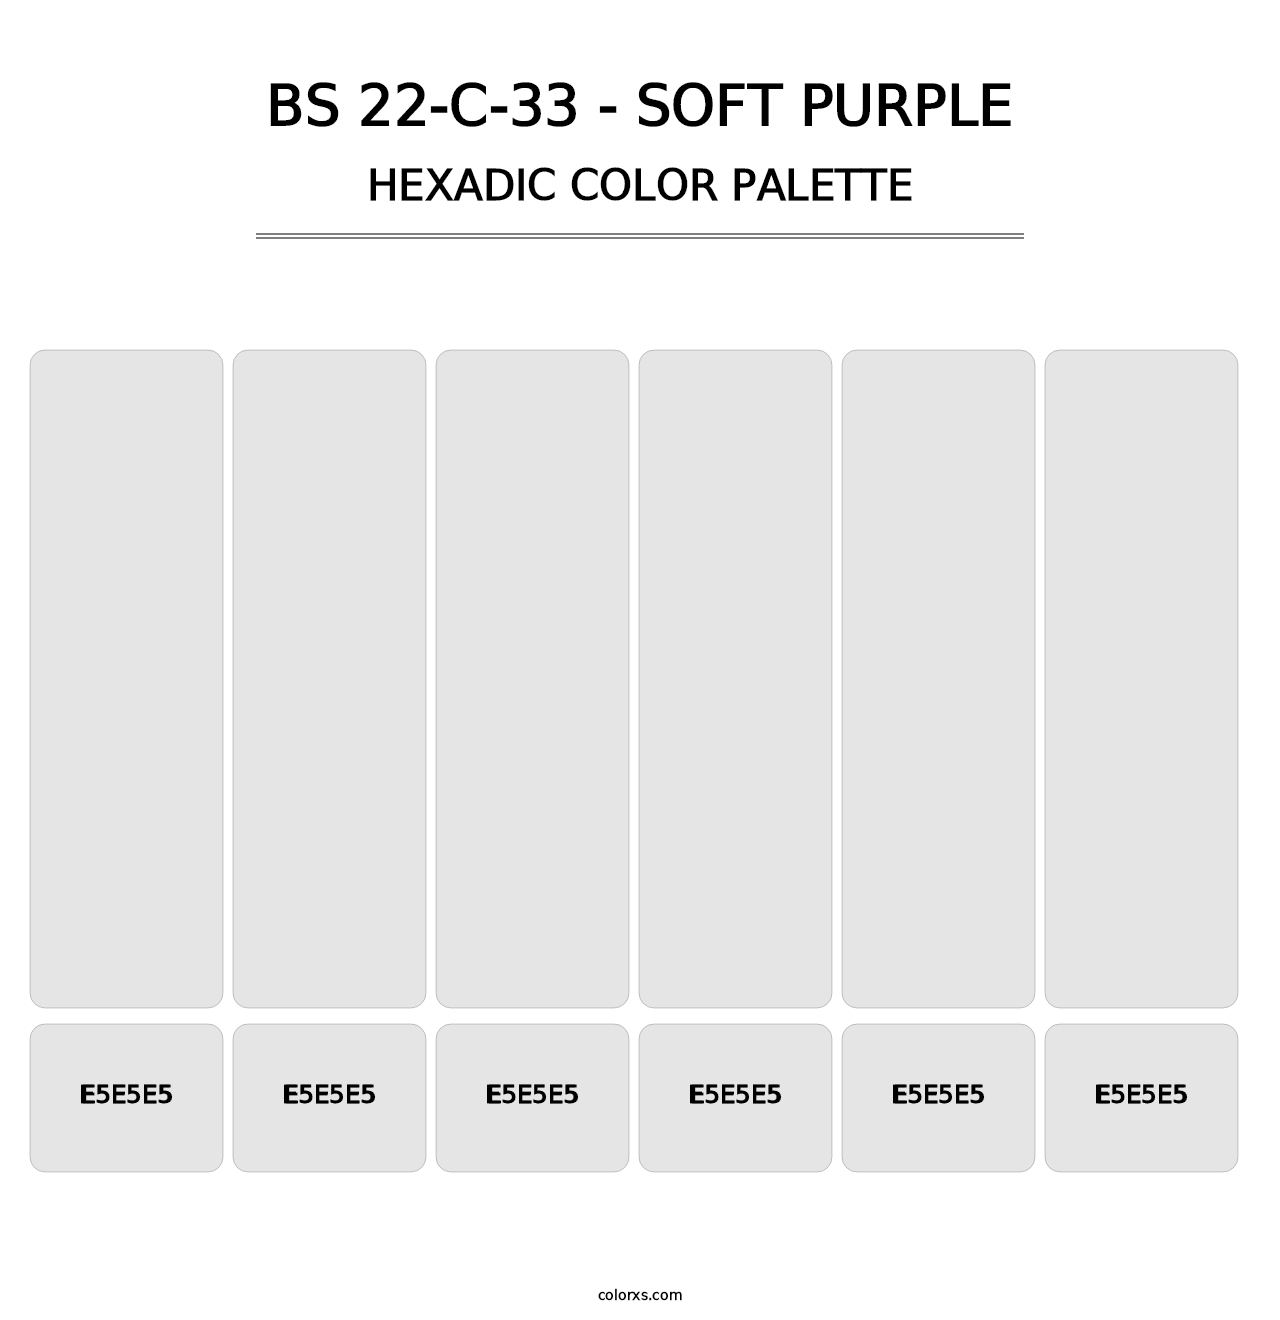 BS 22-C-33 - Soft Purple - Hexadic Color Palette